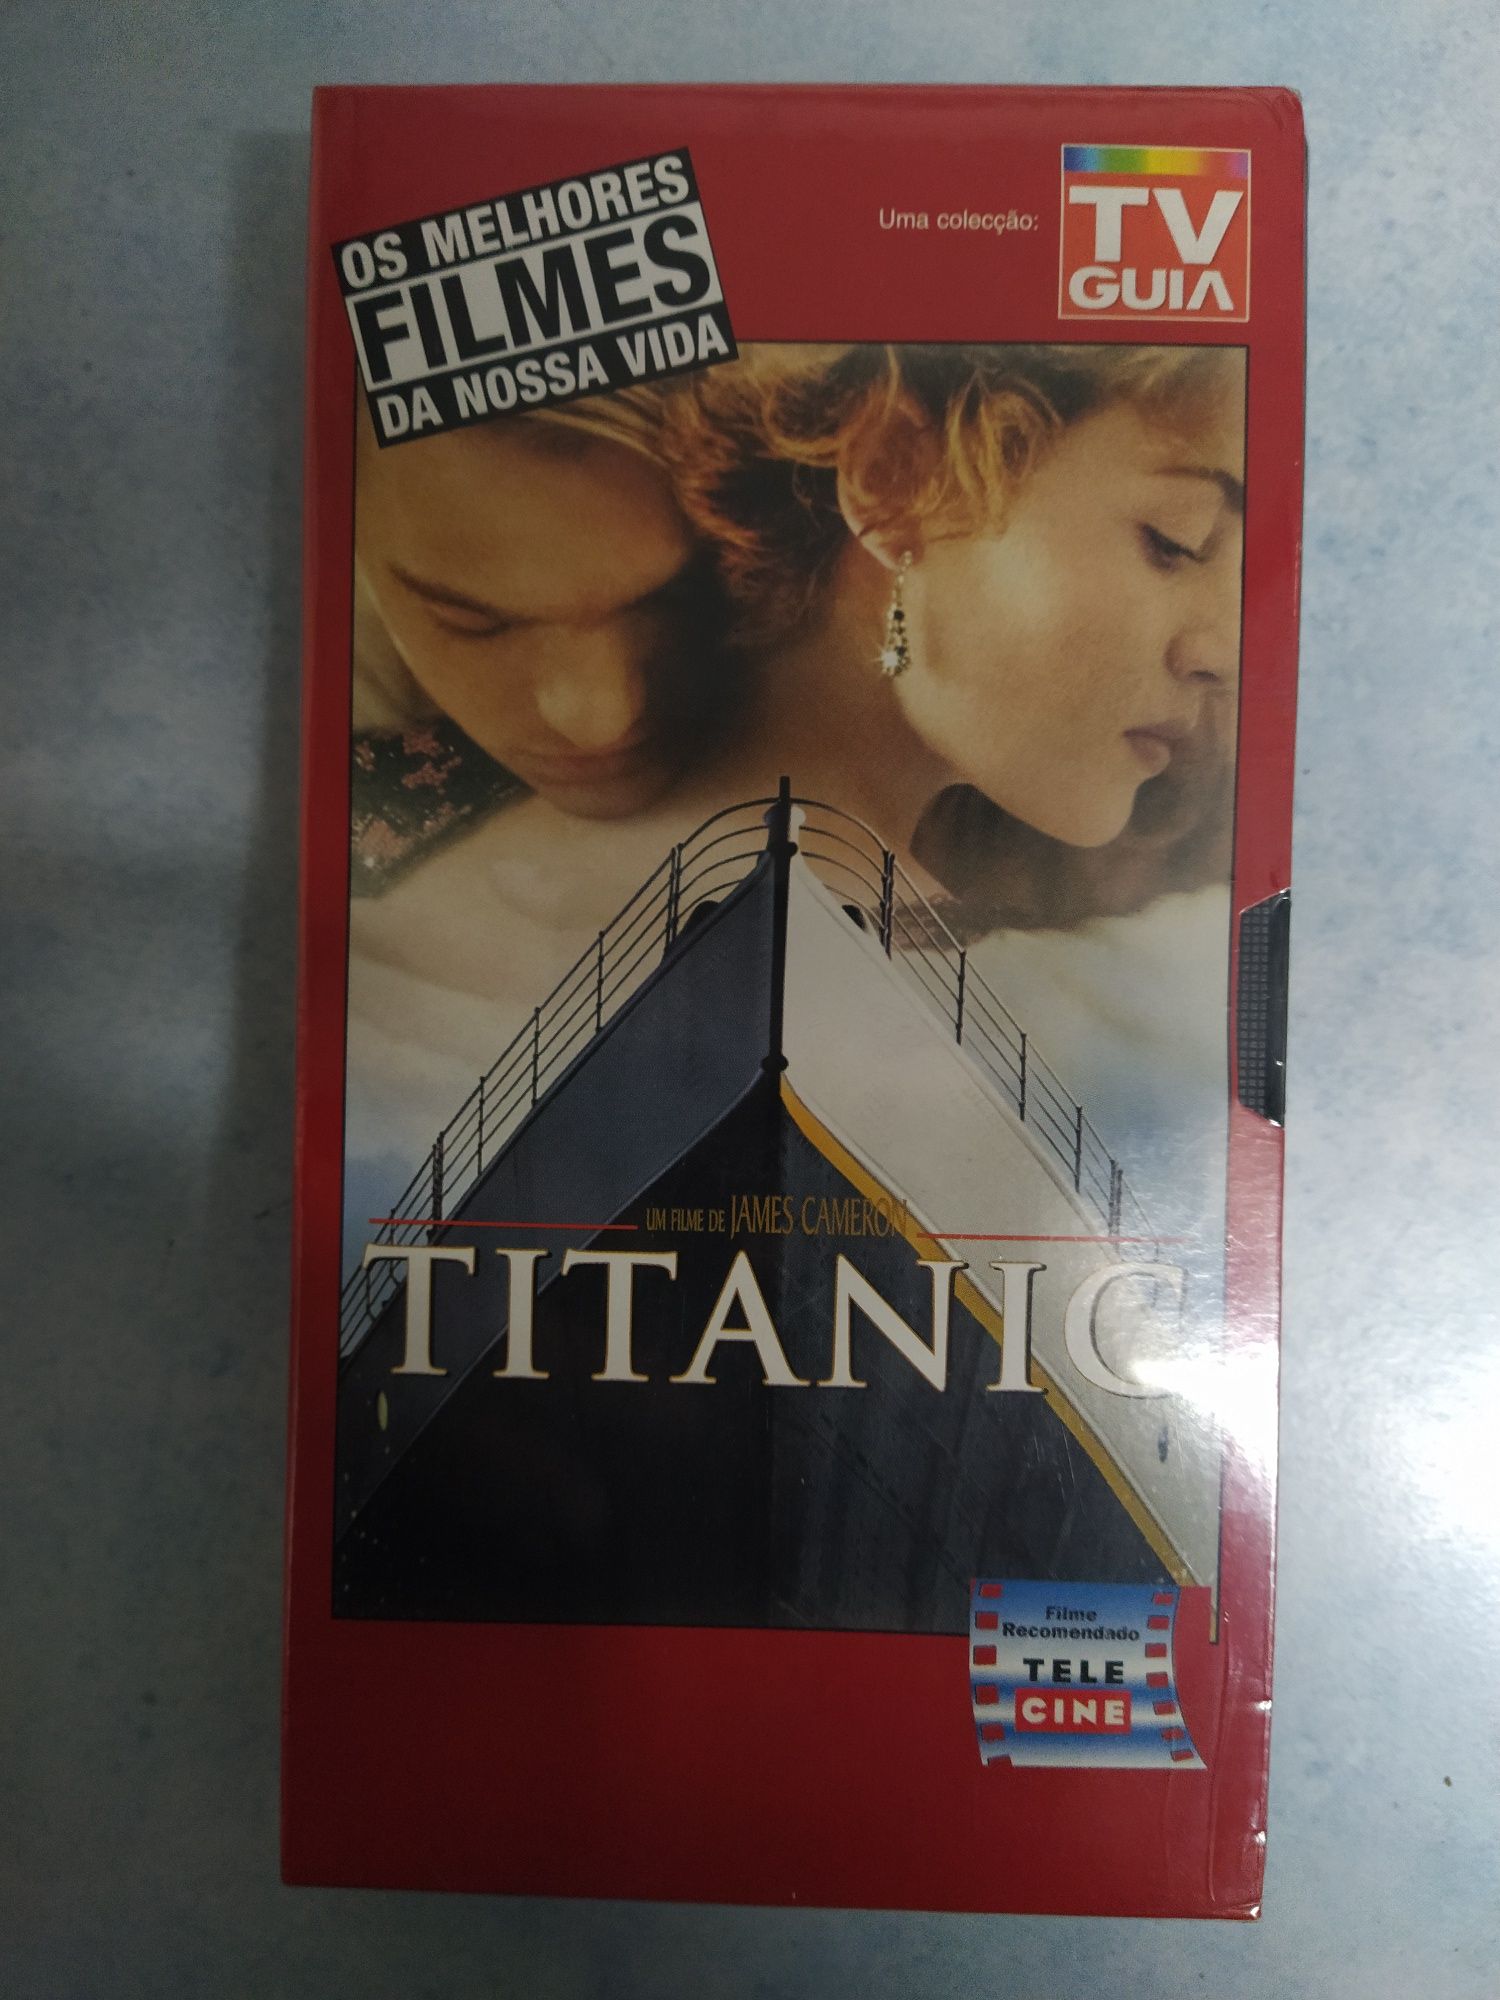 Cassete VHS do filme "Titanic"